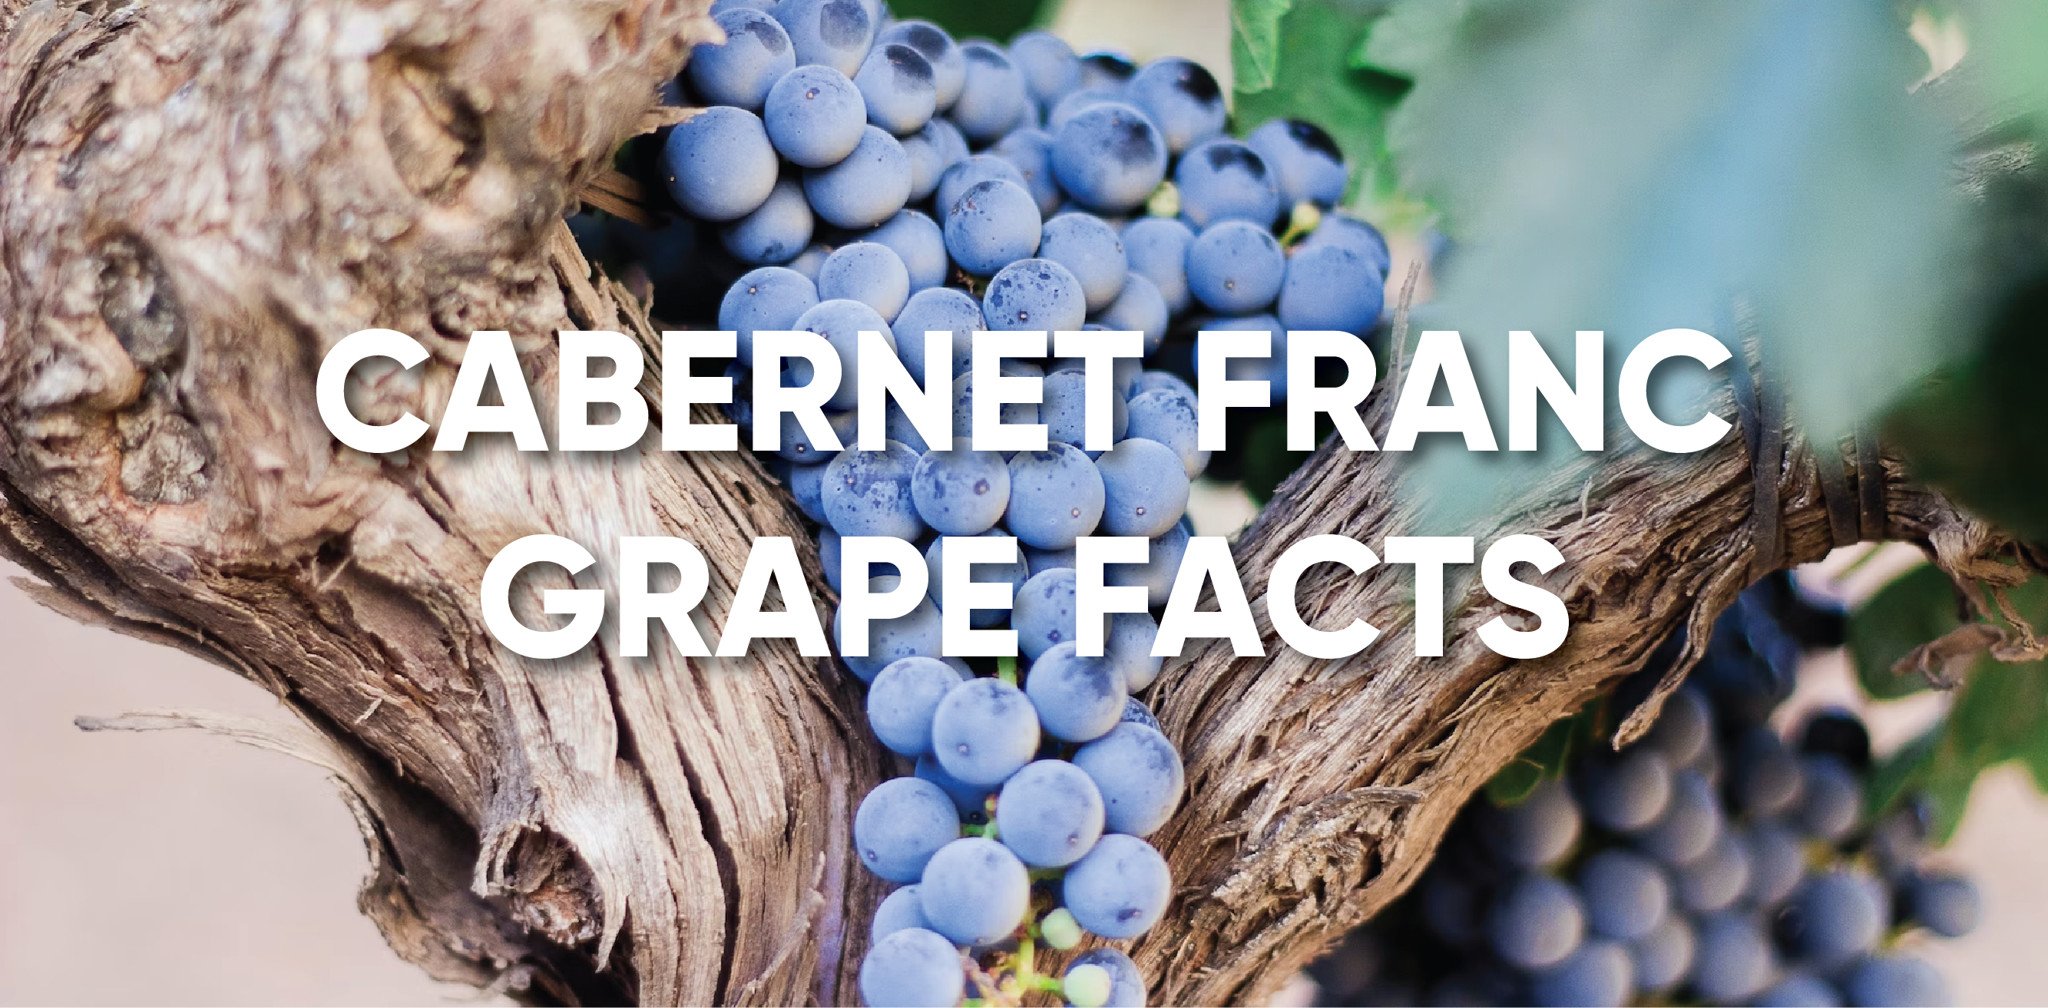 CABERNET FRANC GRAPE FACTS